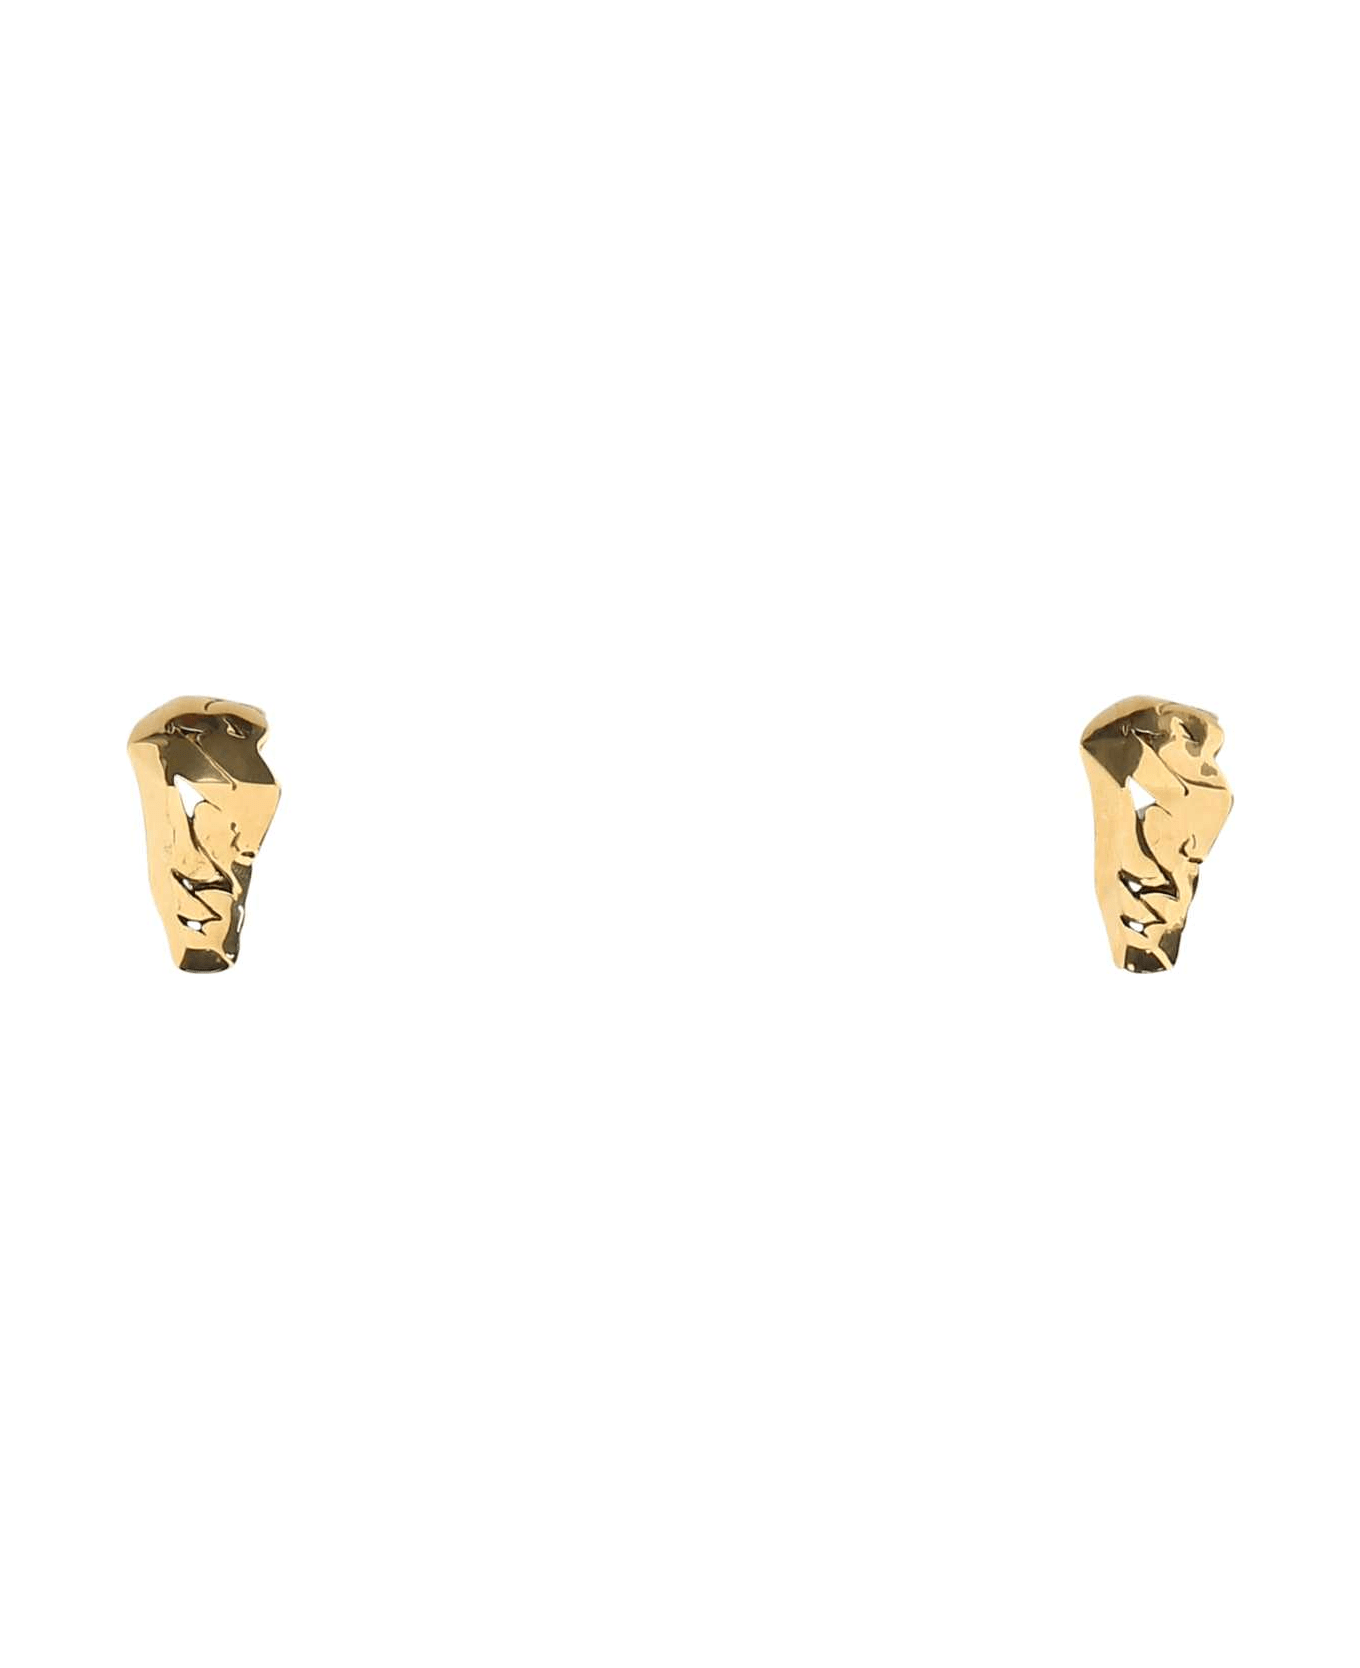 Alexander McQueen Gold Metal Earrings - 0448